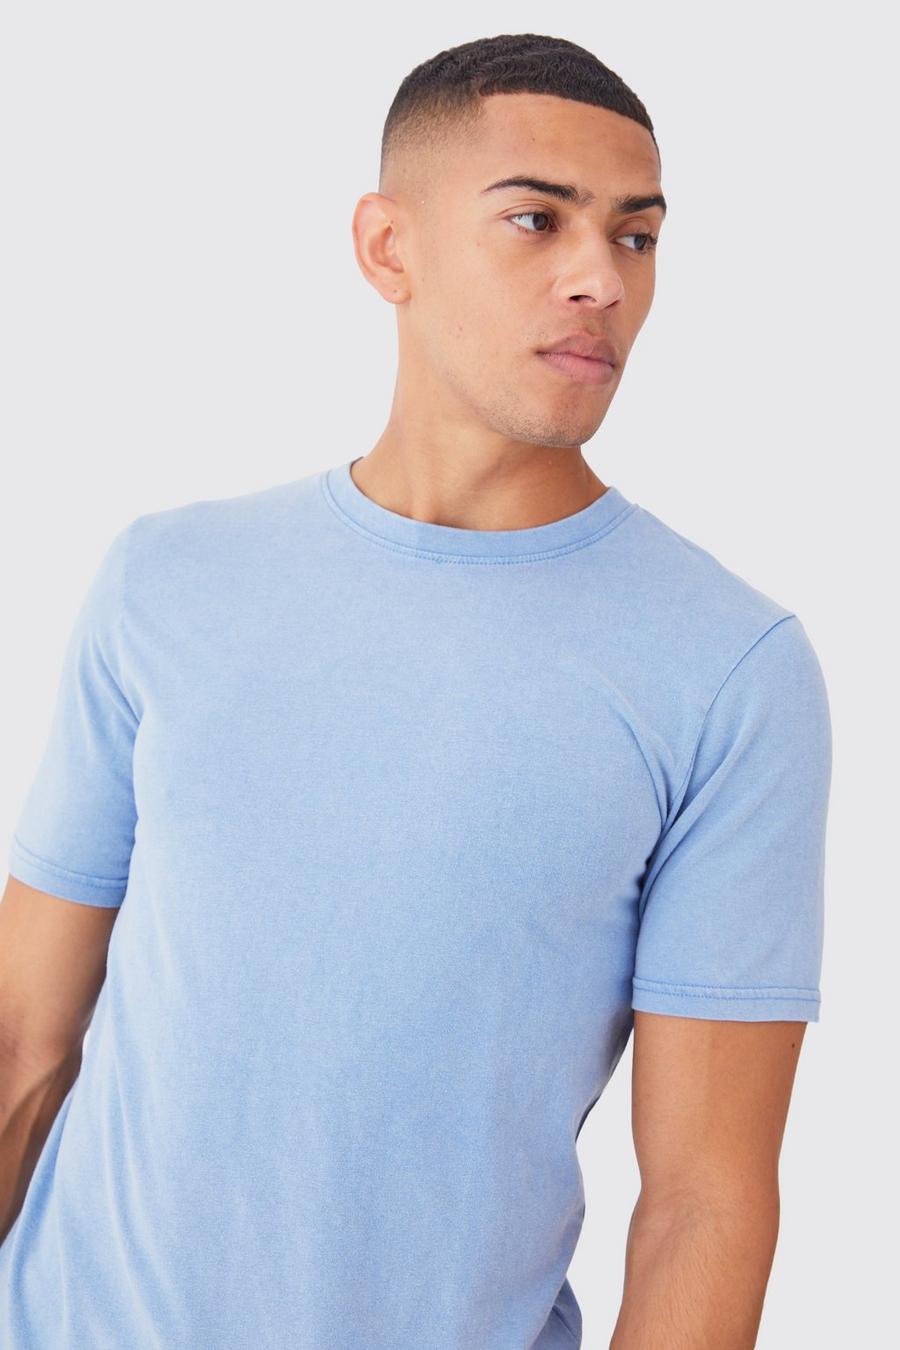 T-shirt a girocollo Slim Fit slavata, Cornflower blue